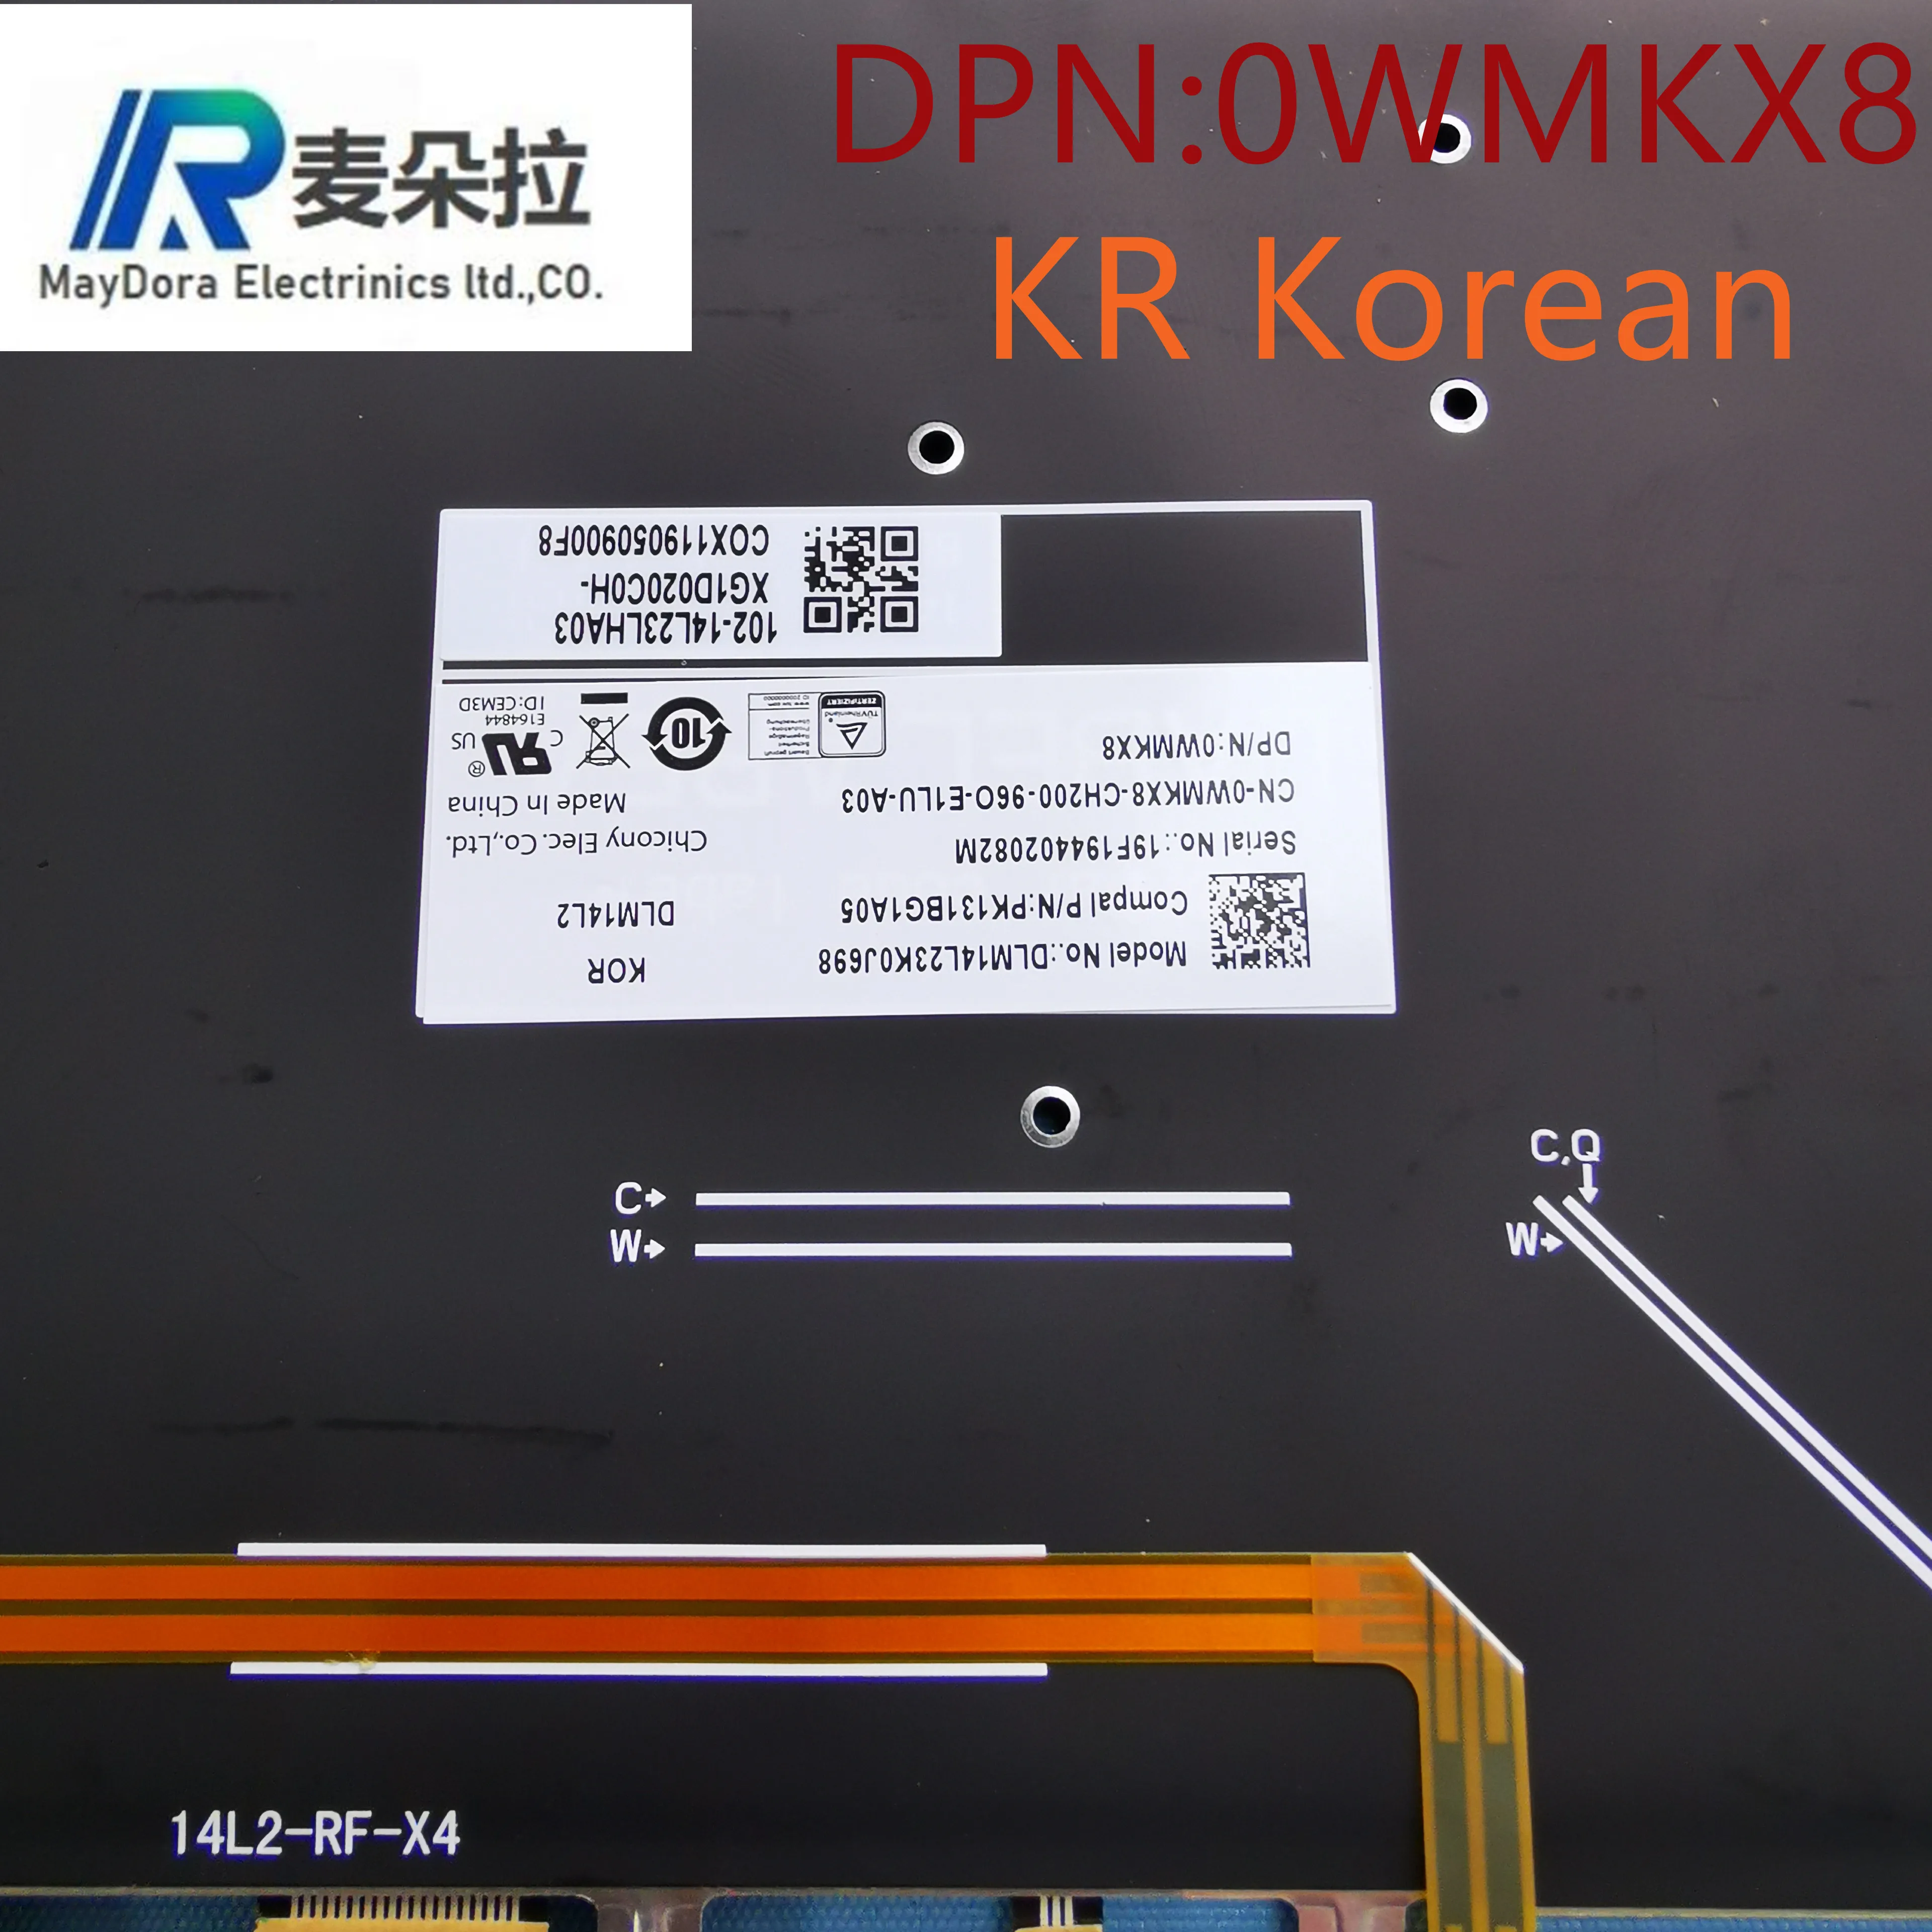 KR coreano luz de fundo do teclado para DELL XPS15 9550 9560 9570 PRECISÃO 5510 5520 5530 LAPTOP PRETO WMKX8